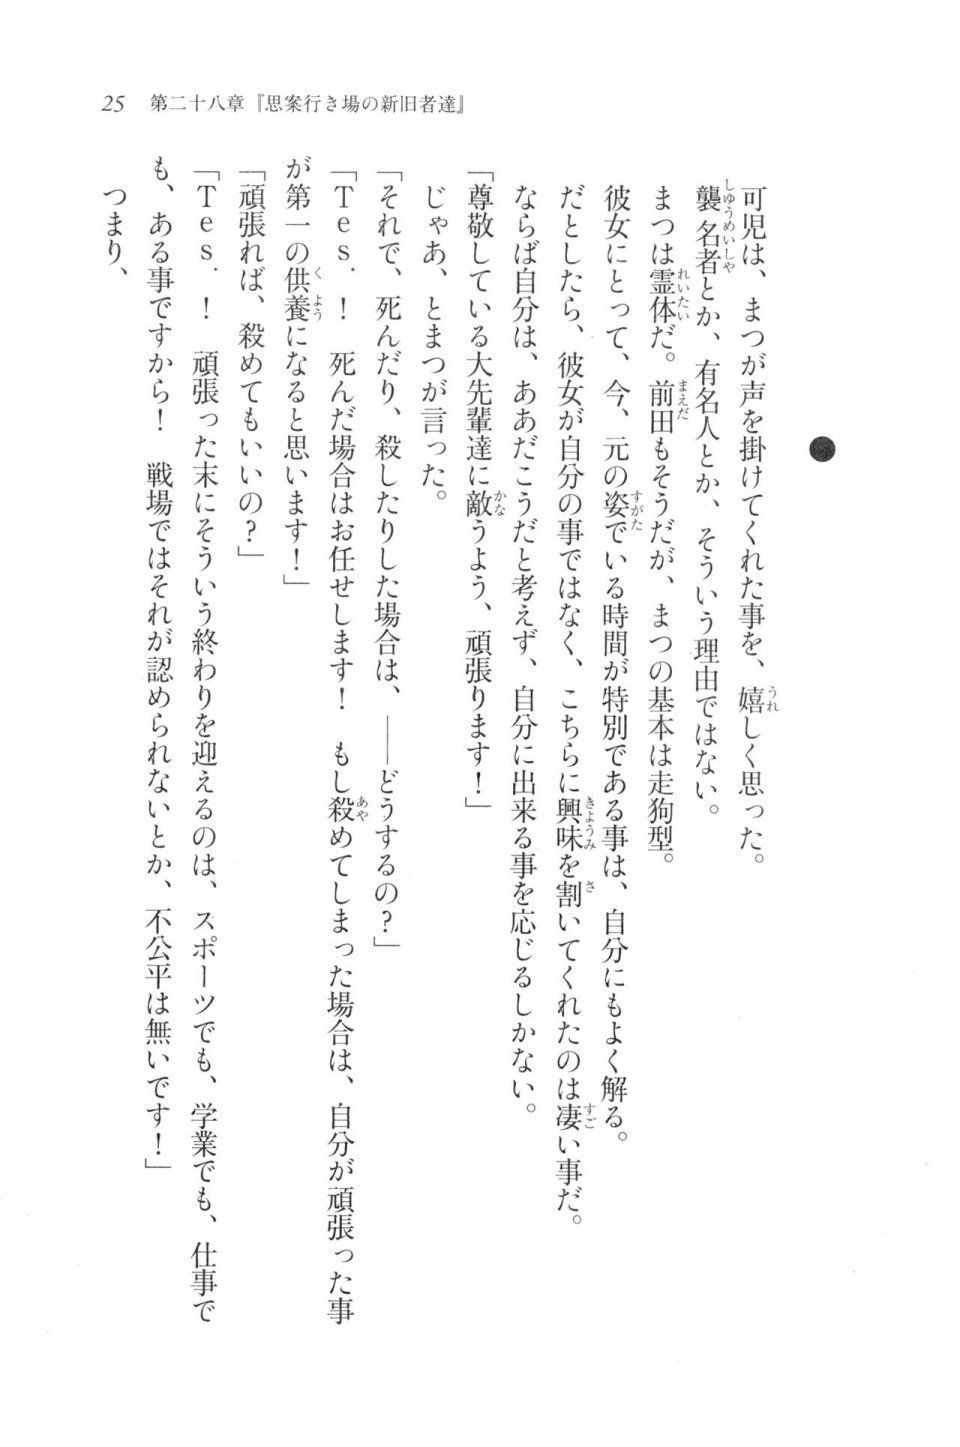 Kyoukai Senjou no Horizon LN Vol 20(8B) - Photo #25